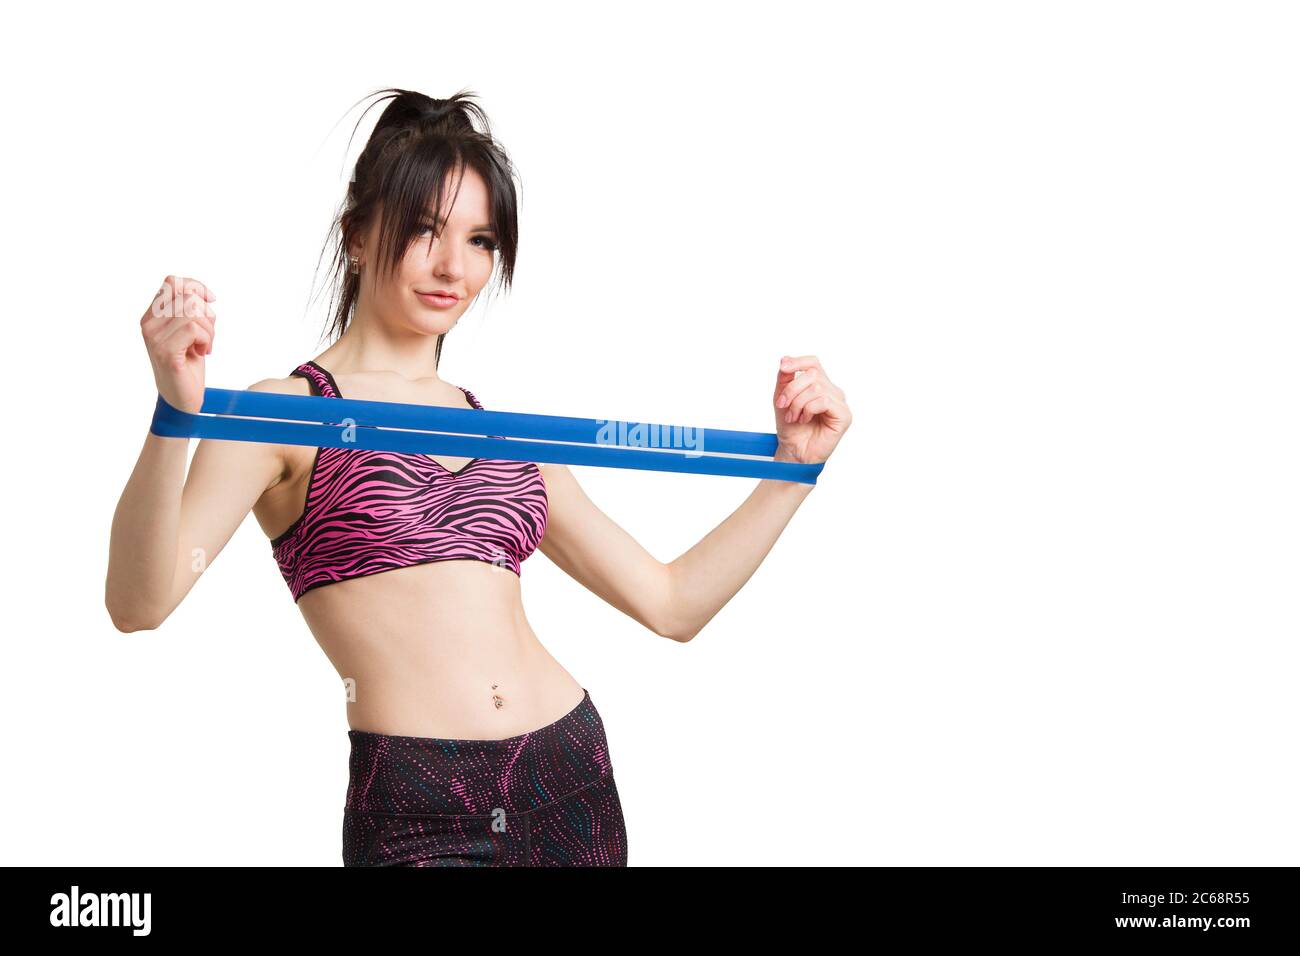 una giovane donna vestita per lo sport o il fitness con una pettinatura a coda di rondine, fa un esercizio con una fascia elastica con un espansore. Foto Stock